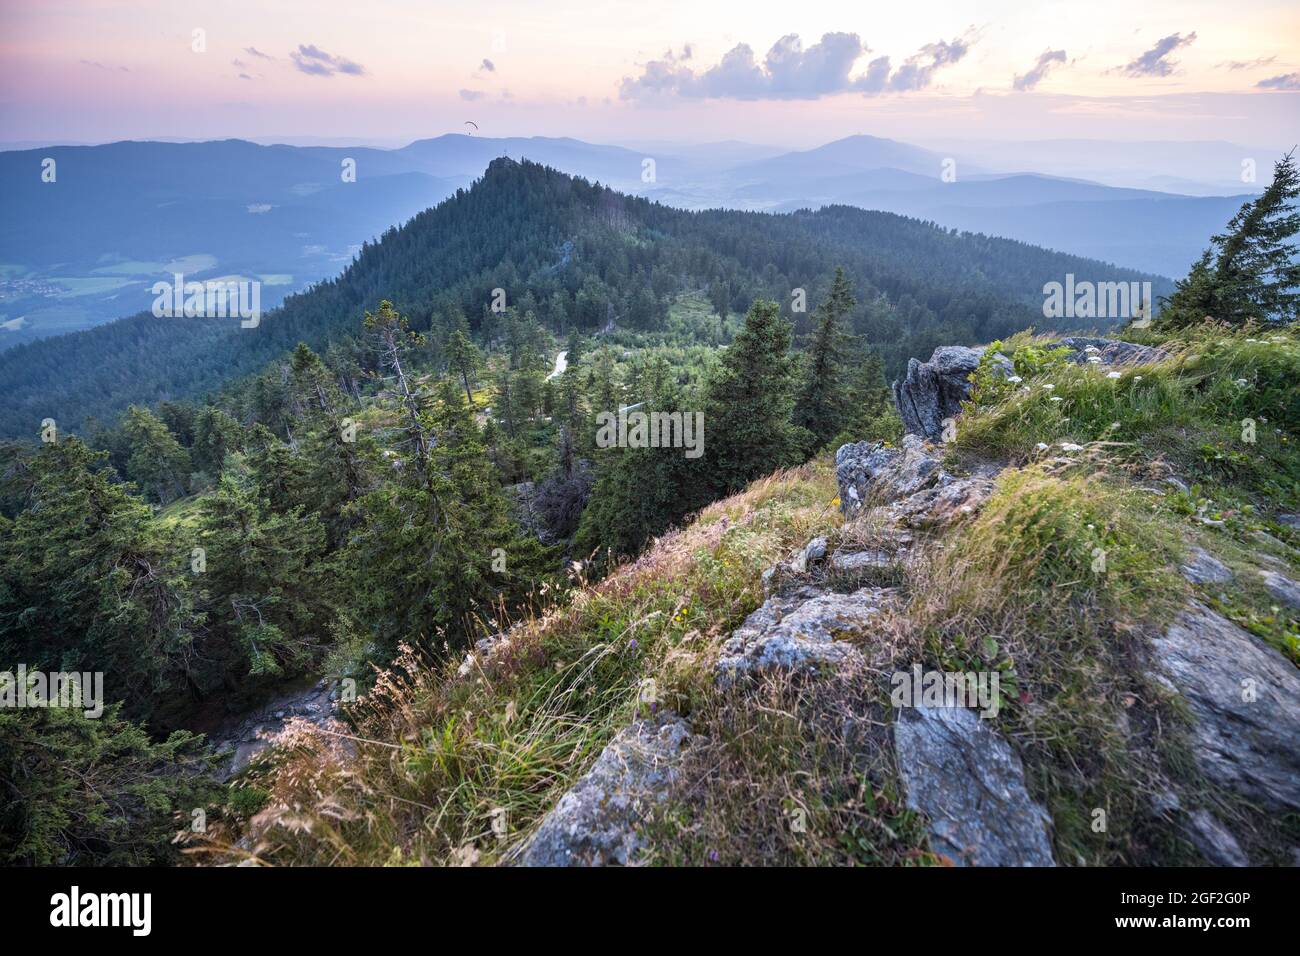 Magnifique vue panoramique sur le sommet de L'OSSER dans la forêt bavaroise, bayerischer Wald, montagne coucher de soleil forêt vallée verte Banque D'Images